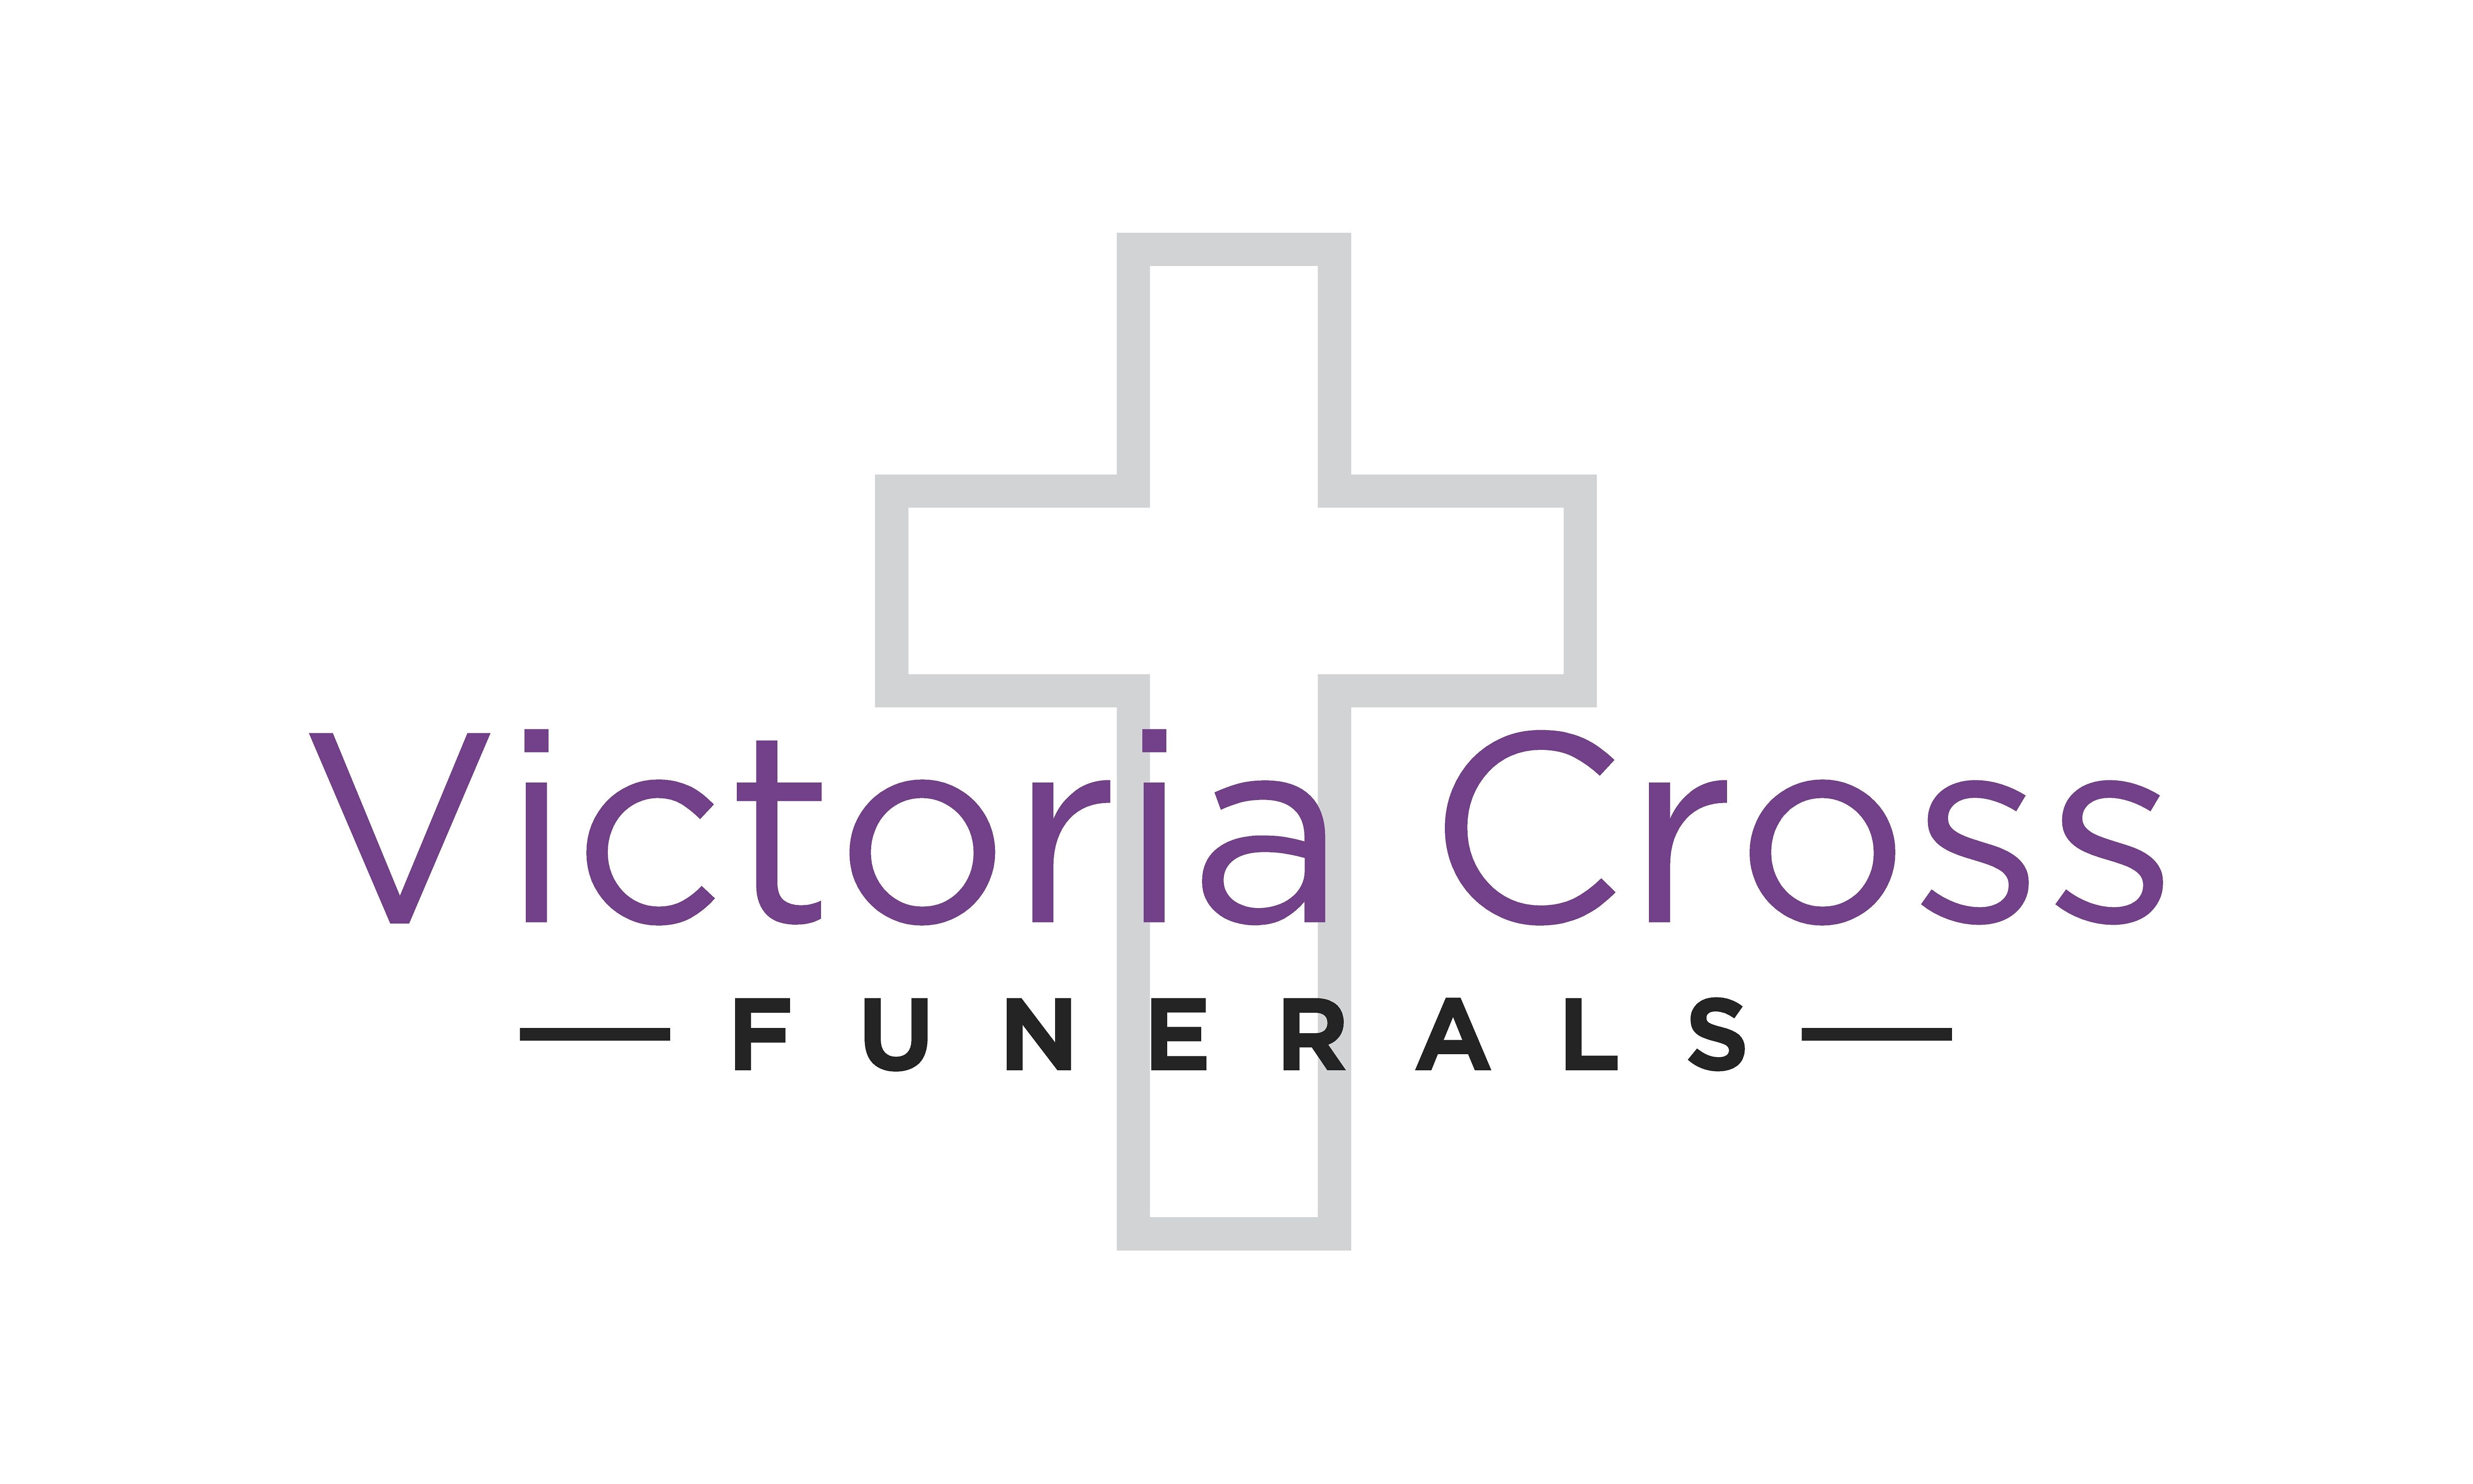 Victoria Cross Funerals